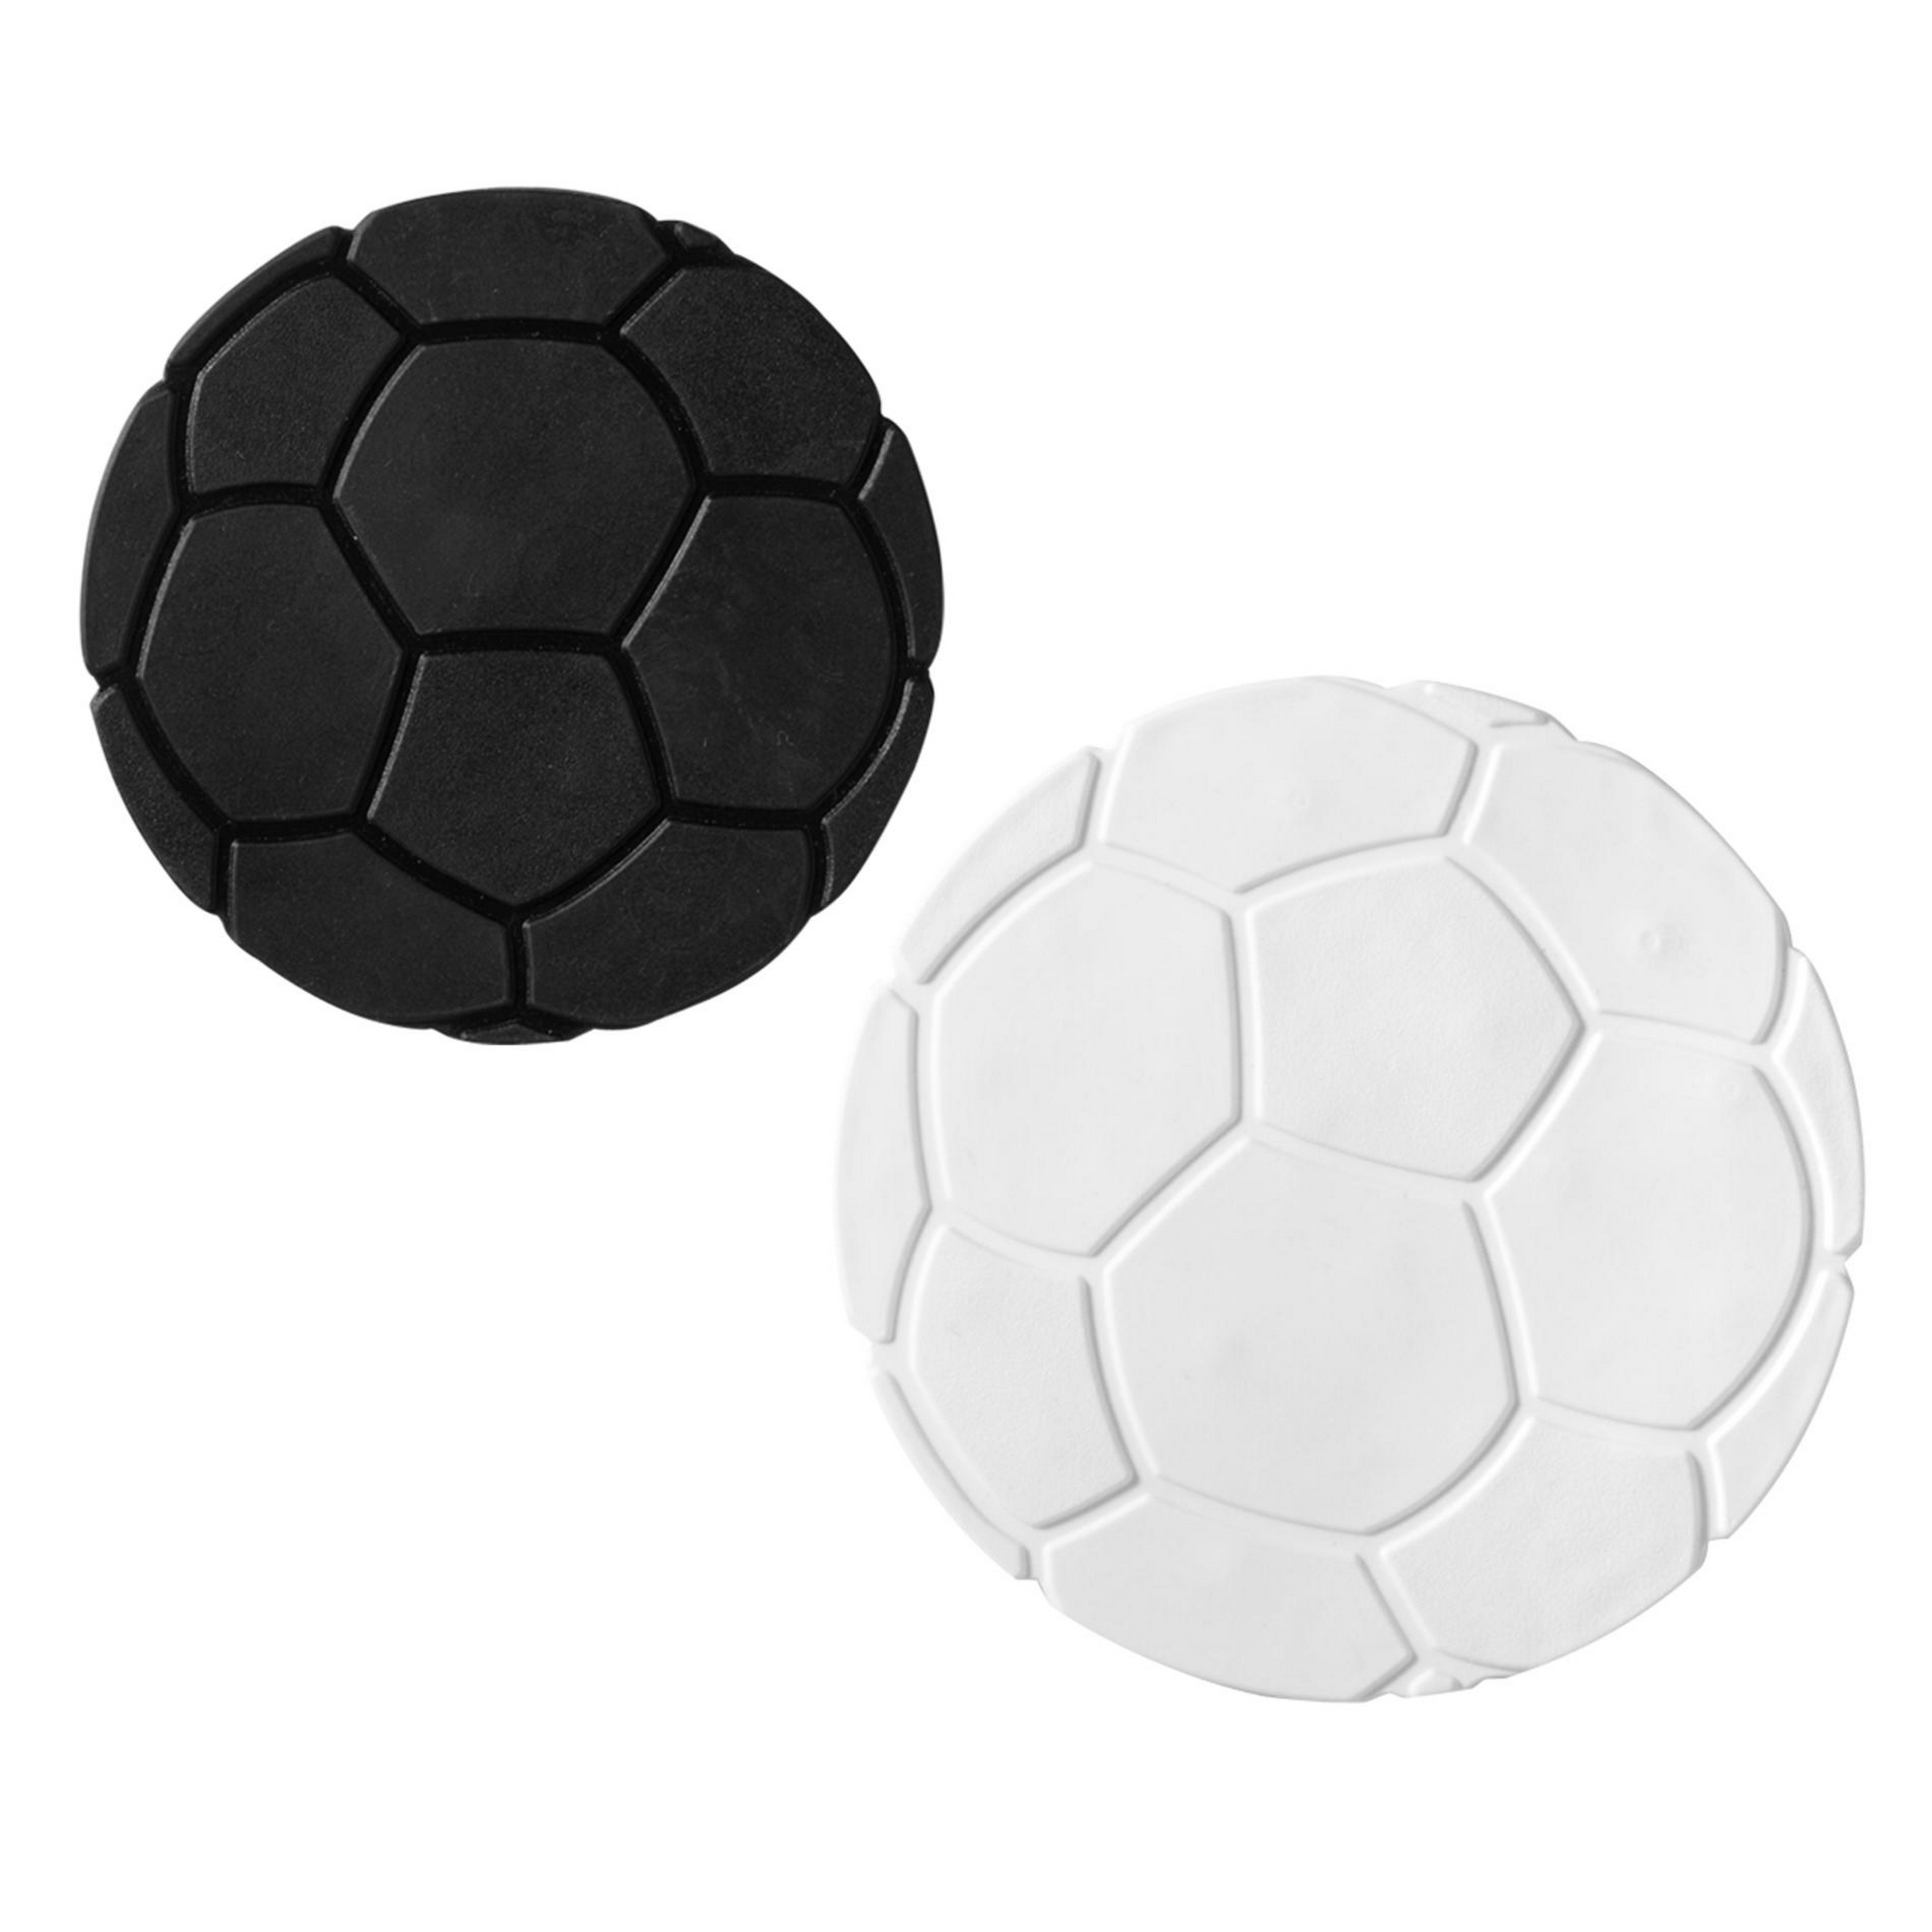 Dusch- und Wanneneinlage 'XXS Fußball' weiß/schwarz Ø 10 cm, 6 Stück + product picture